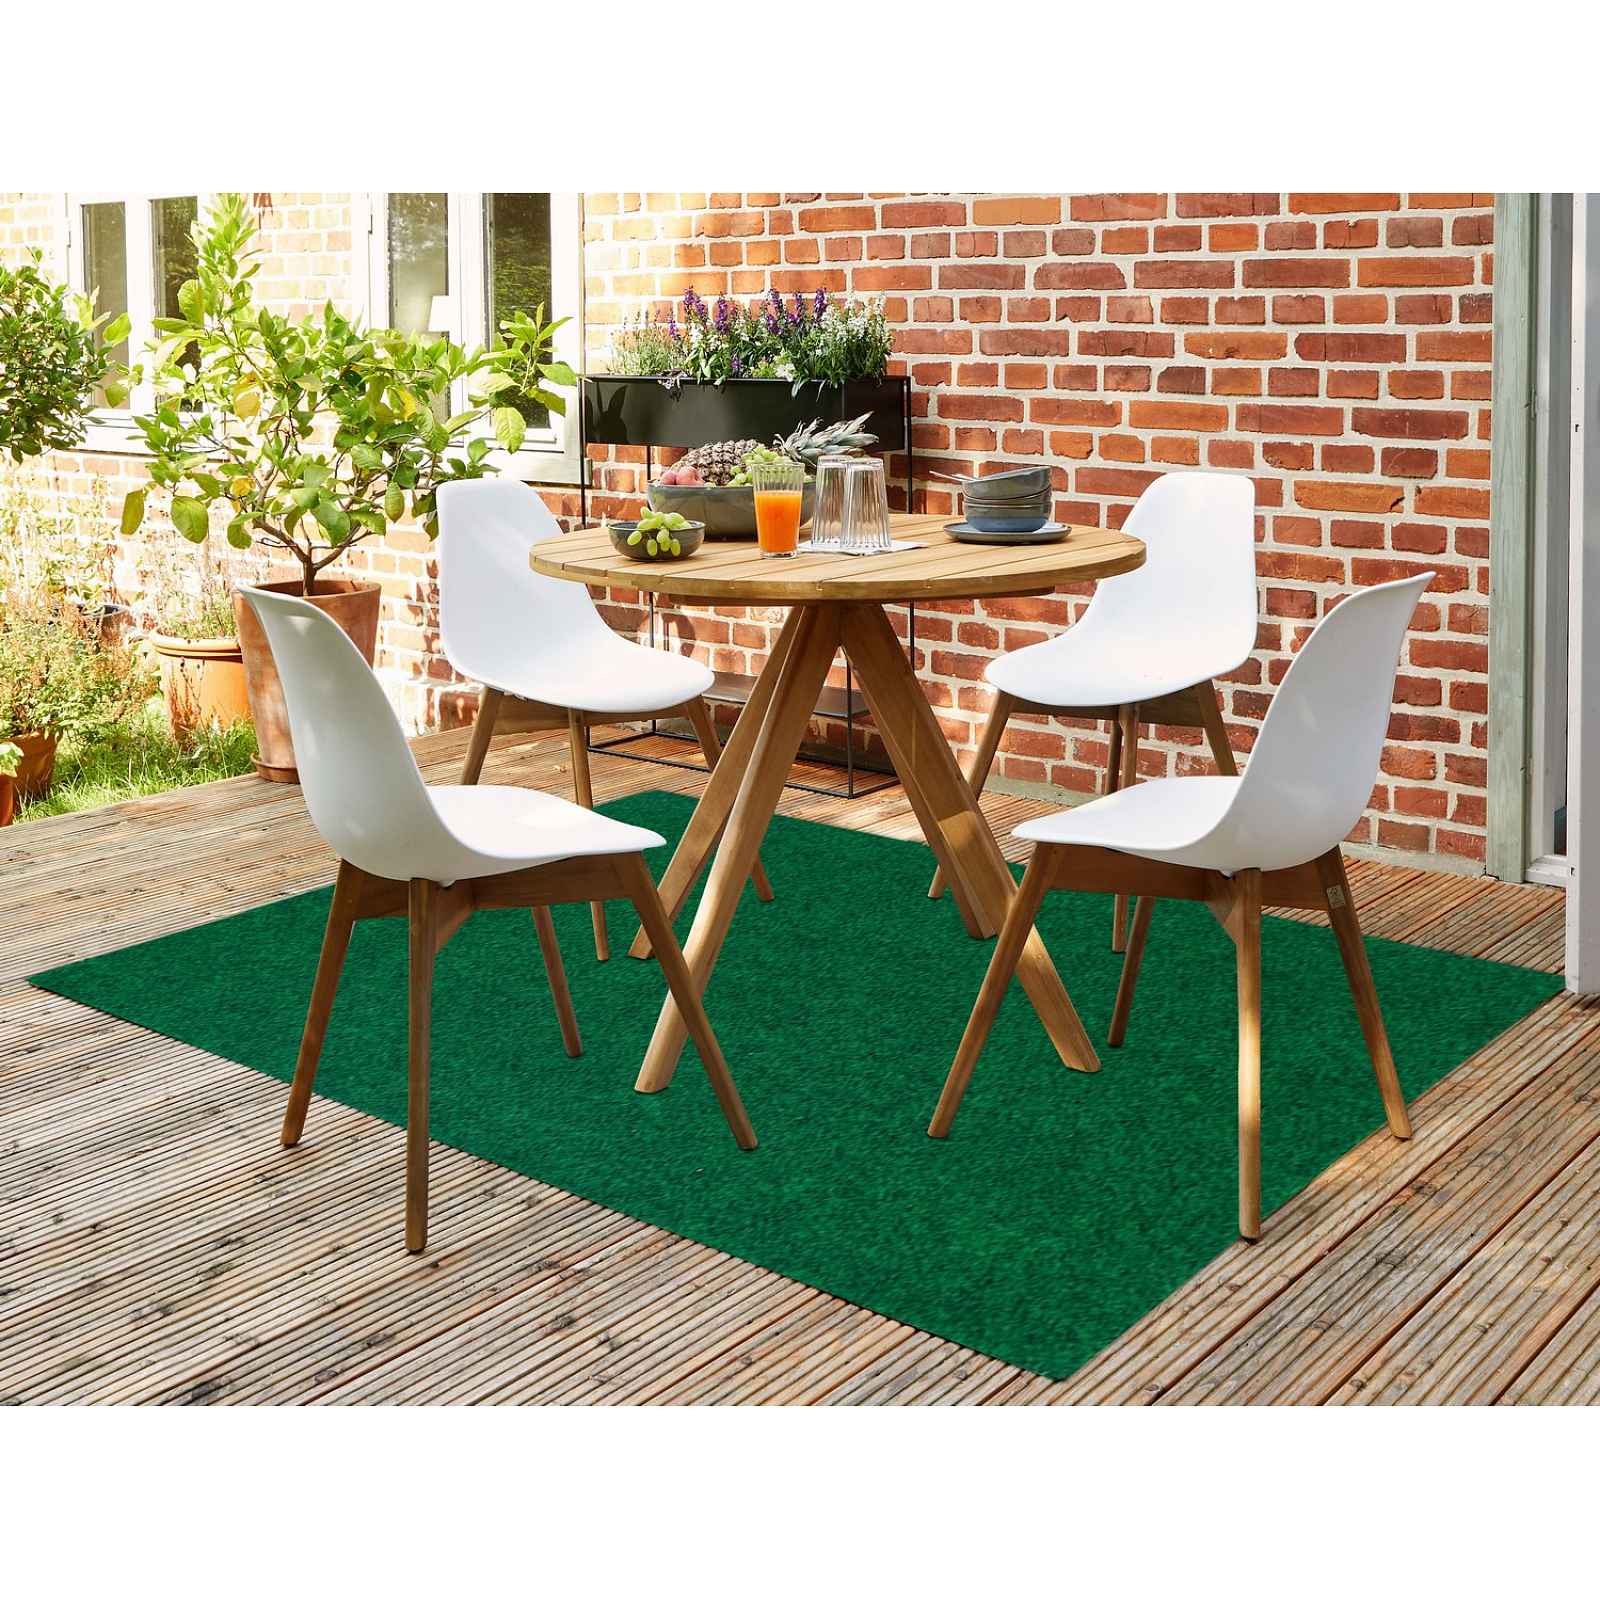 Umělý travní koberec s nopy, 100x200 cm